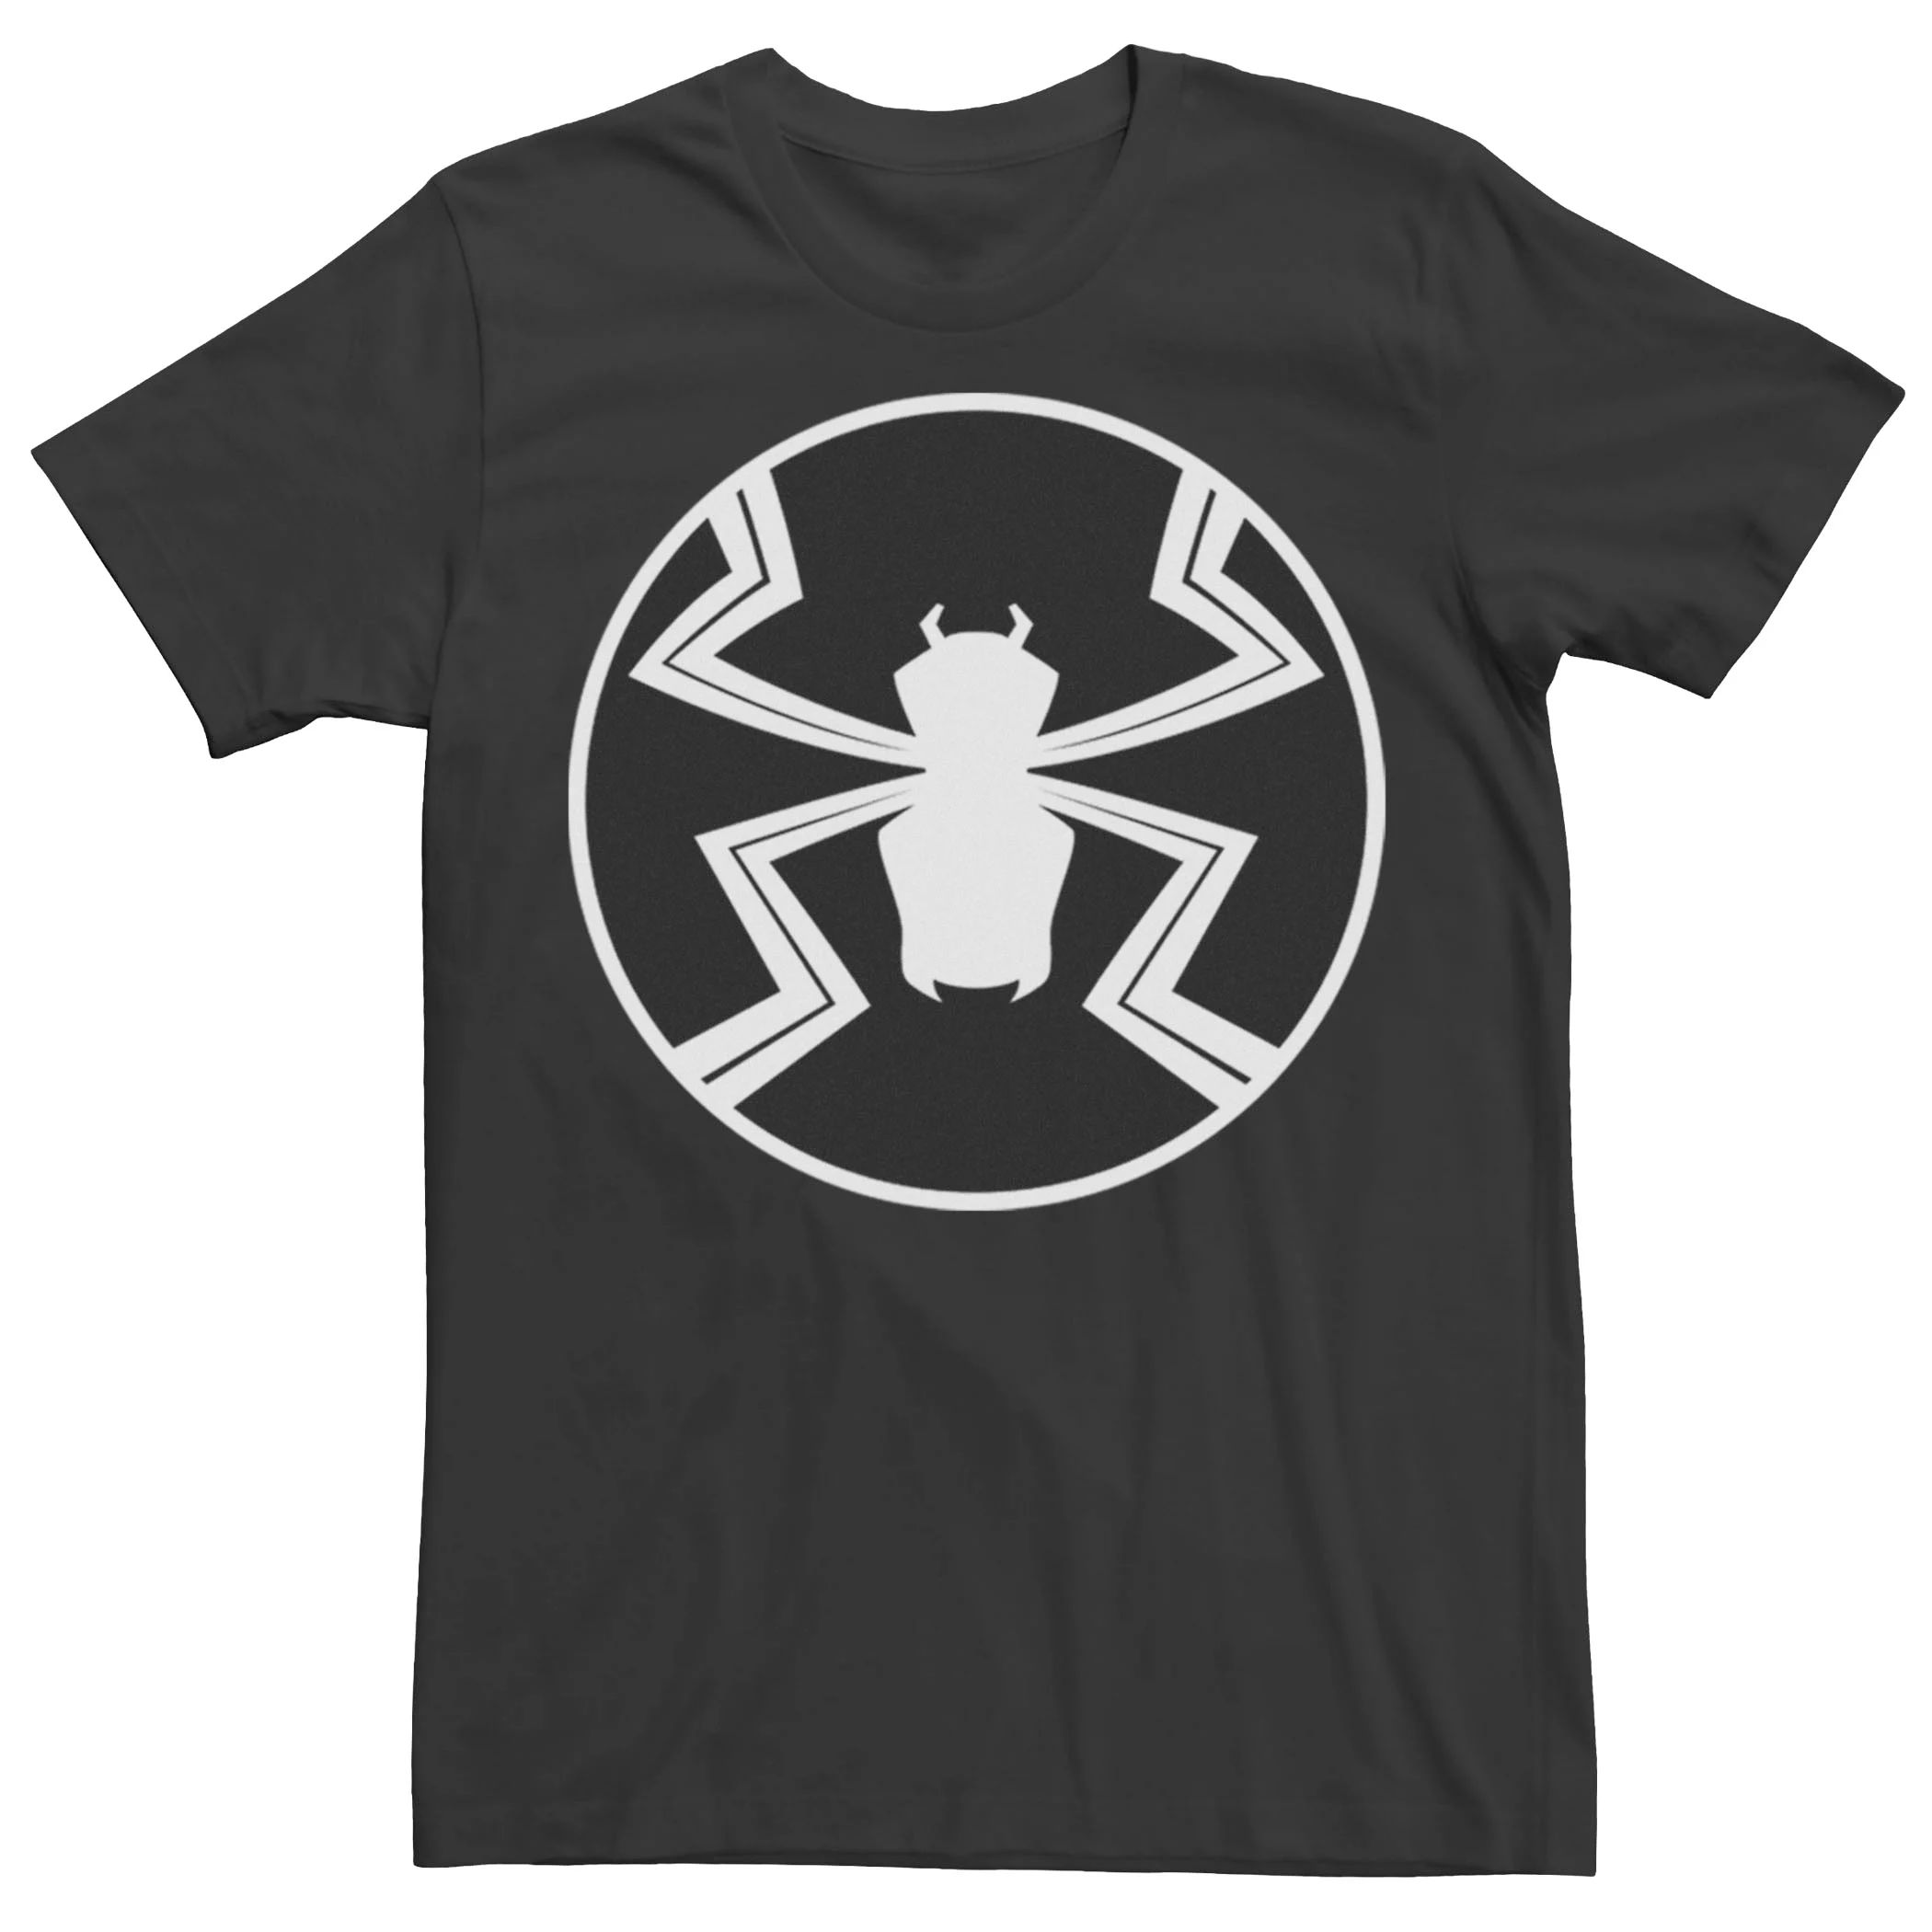 Мужская футболка с графическим логотипом Marvel Agent Venom мужская толстовка с логотипом venom classic marvel